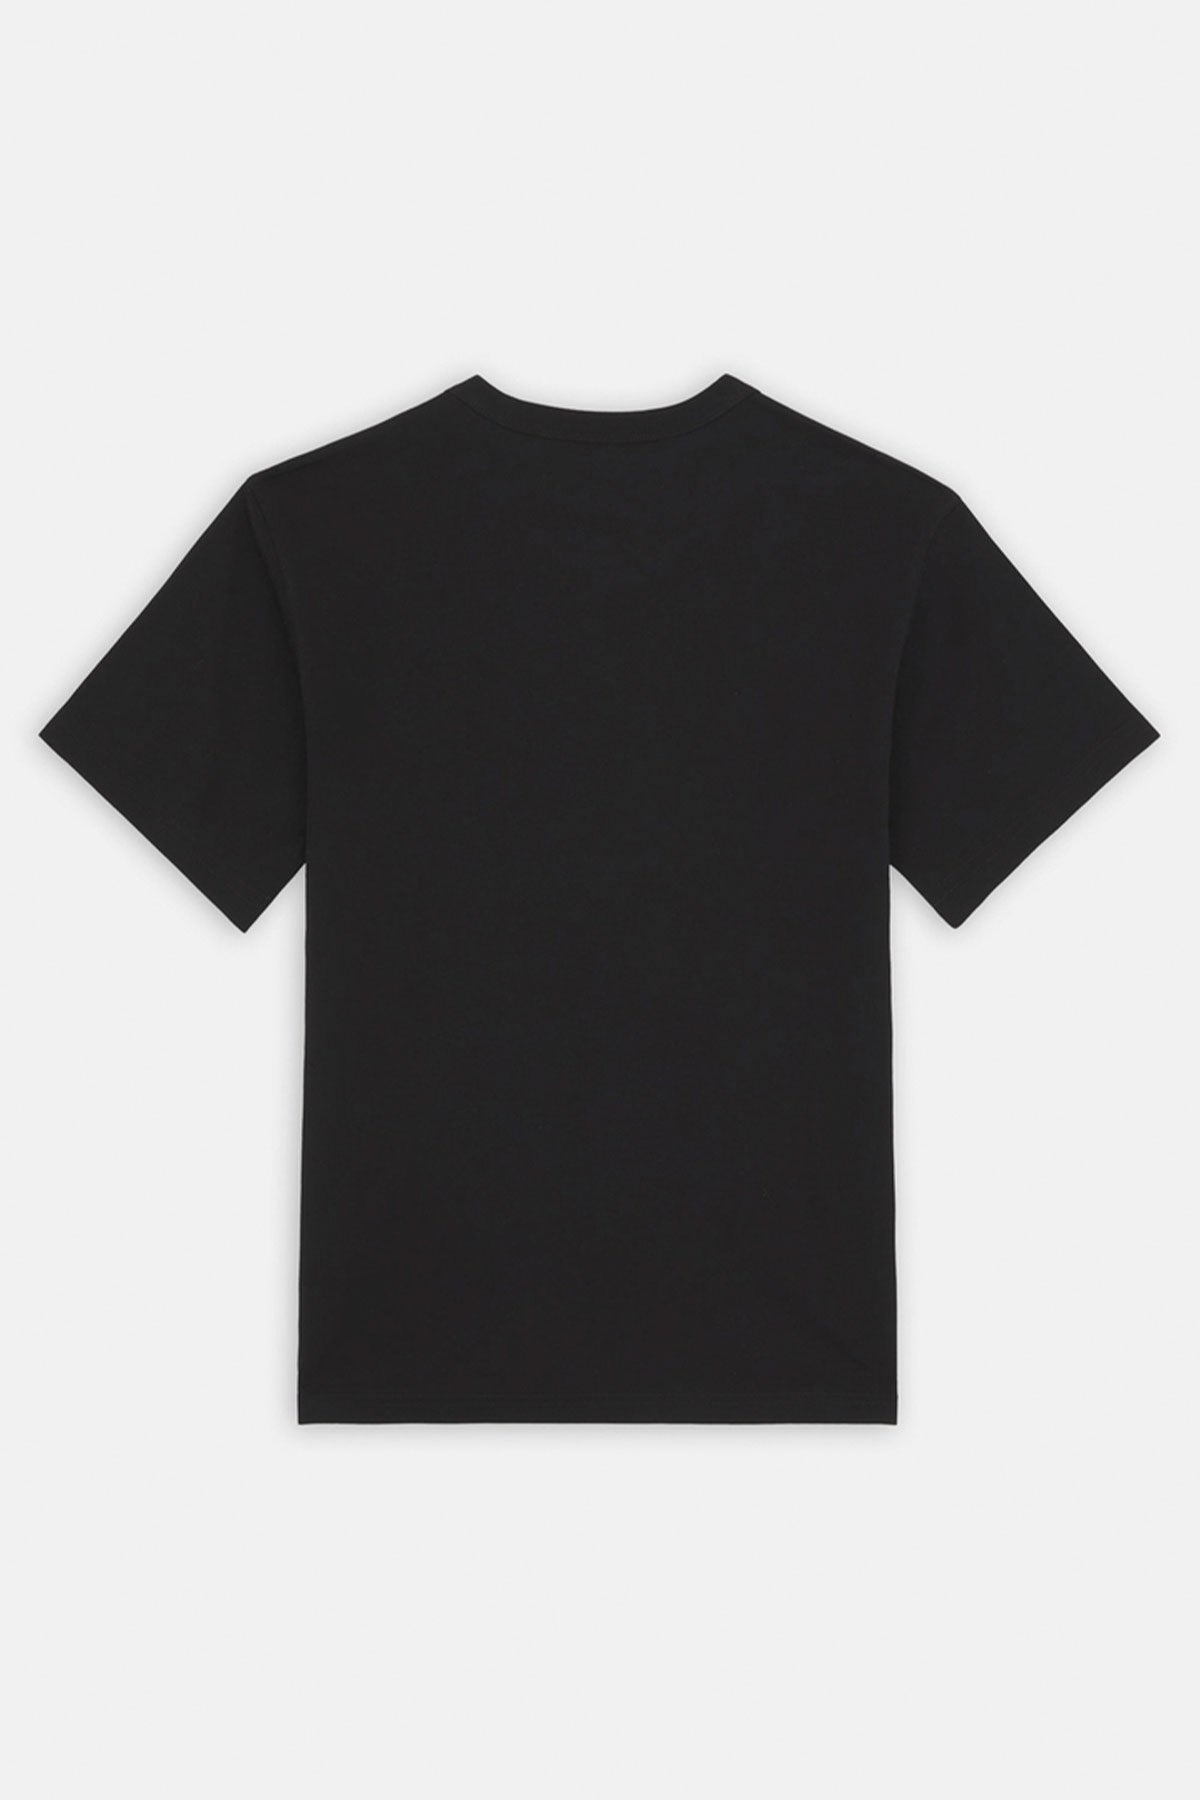 דיקיז חולצת טי AITKIN CHEST בצבע שחור-תכלת לגברים-Dickies-XS-נאקו